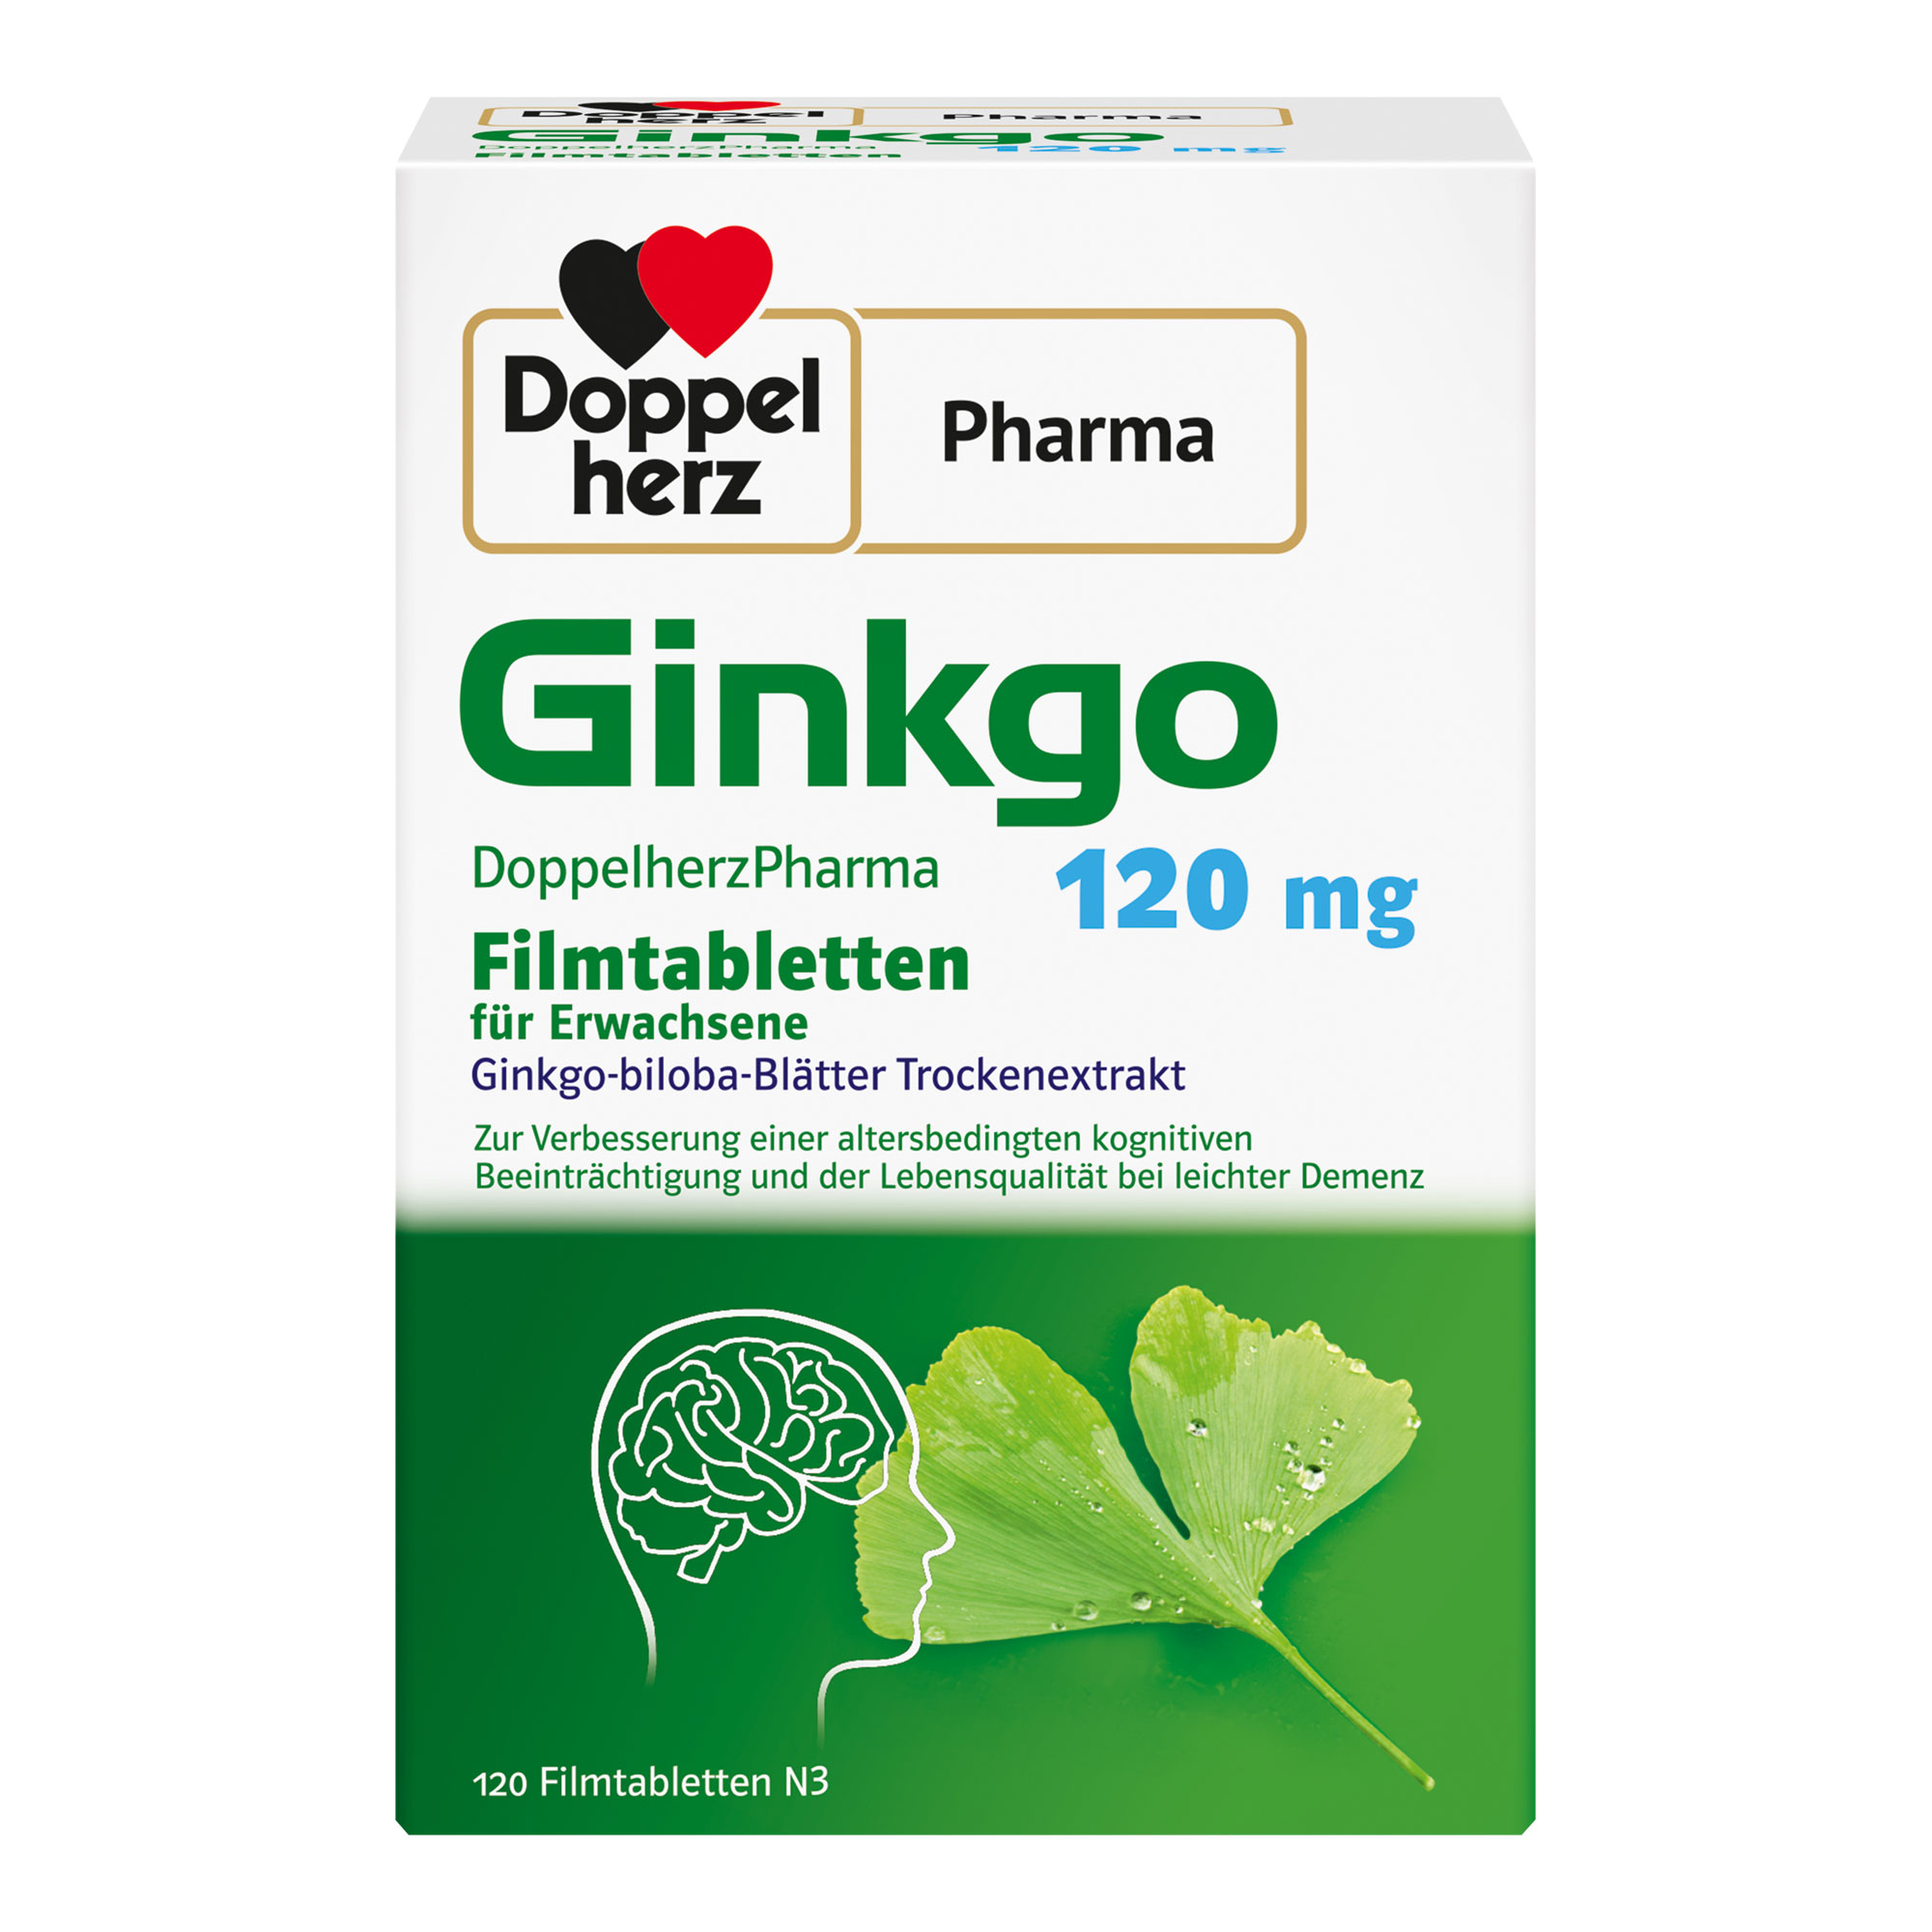 Pflanzliches Arzneimittel mit Ginkgo-biloba-Blätter Trockenextrakt. Zur Anwendung bei leichter Demenz und altersbedingter kognitiver Beeinträchtigung.